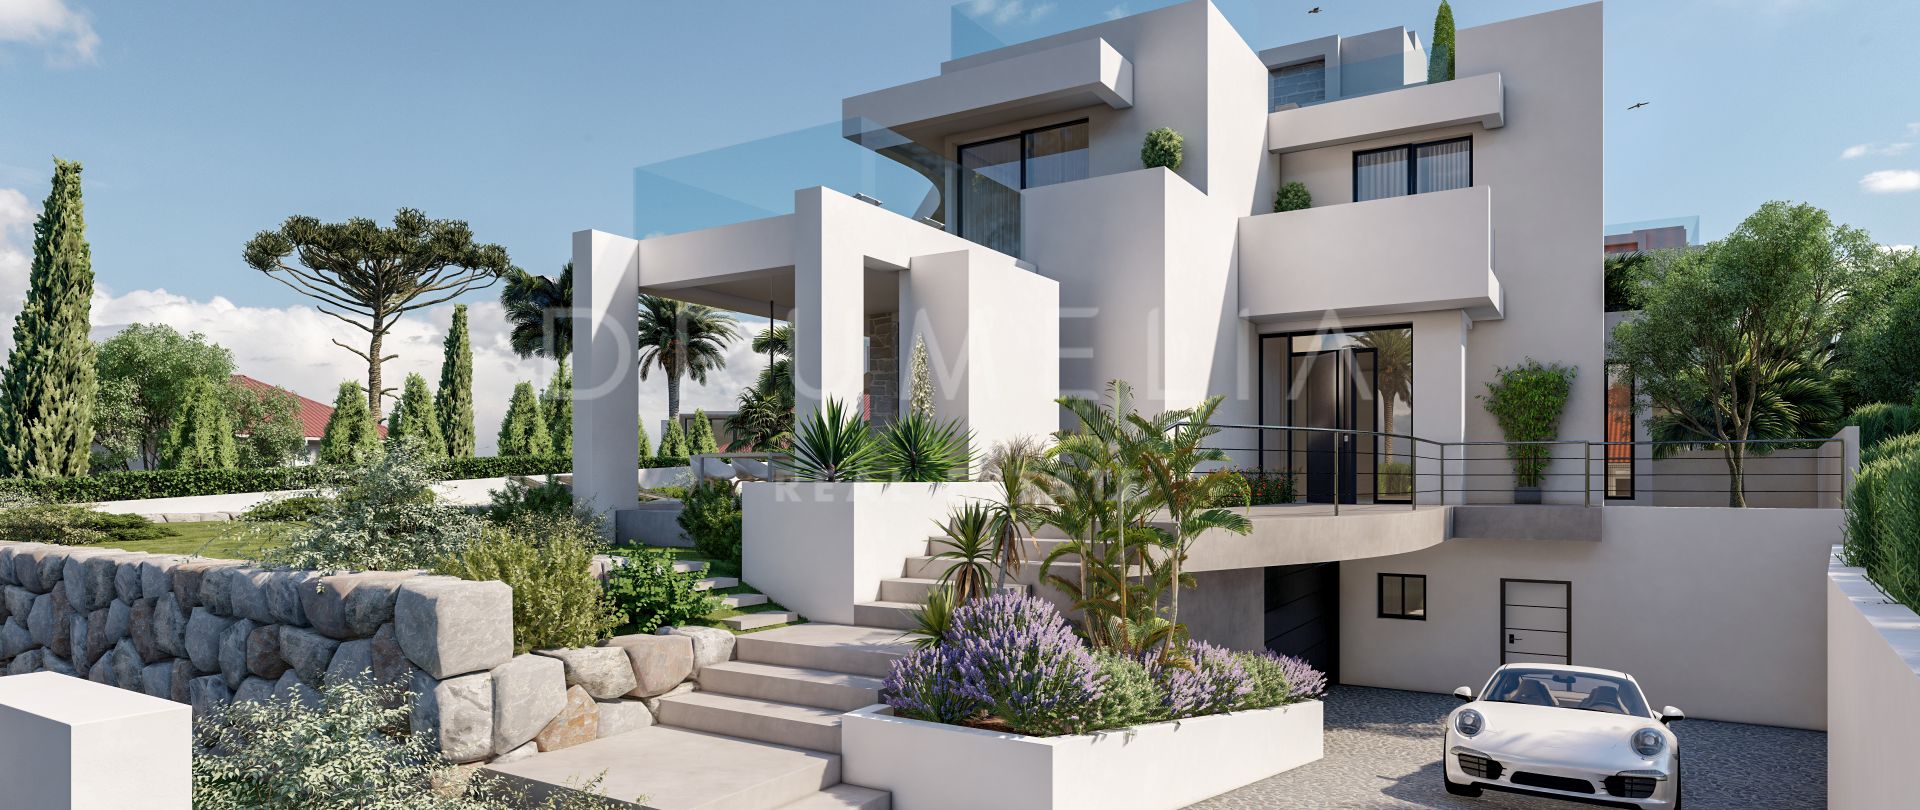 Villa for salg i Marbesa, Marbella Øst